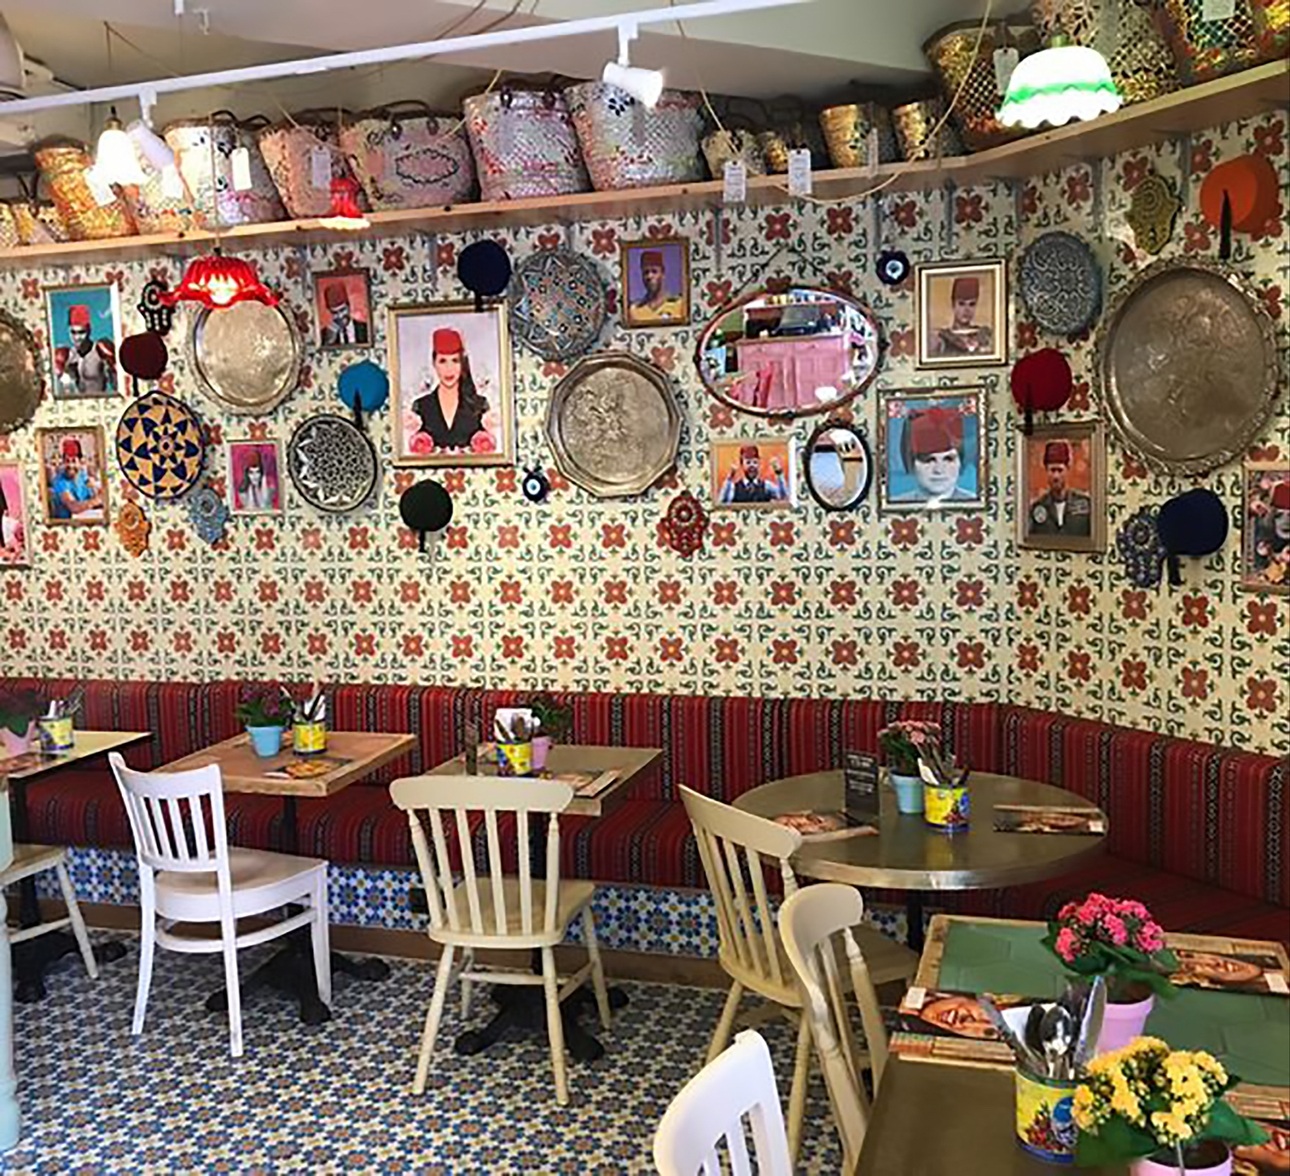 Lebanese restaurant, Comptoir Libanais has opened in Kingston: Image 1